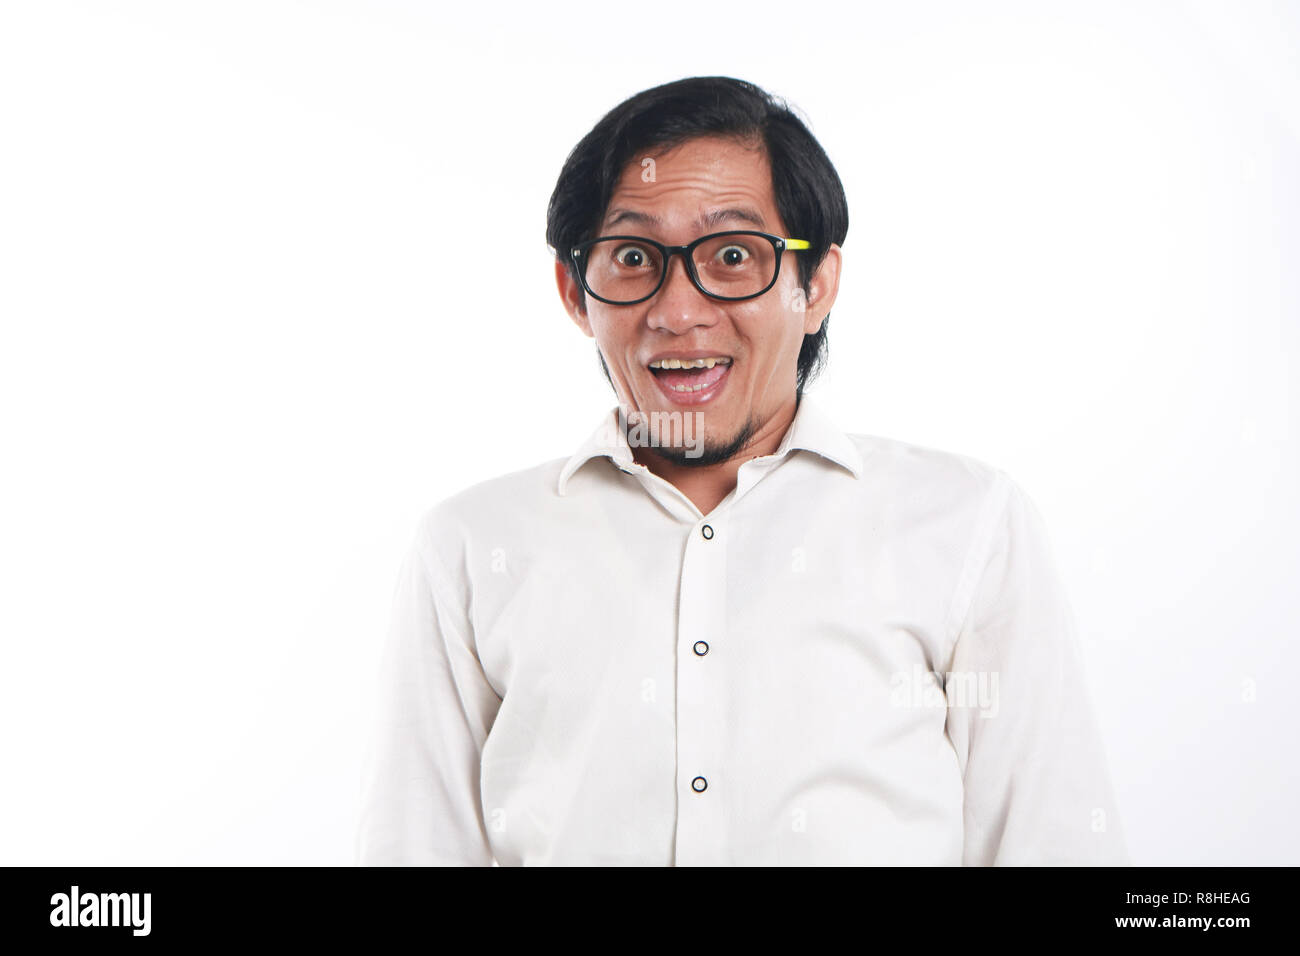 Foto immagine ritratto di un divertente giovane imprenditore asiatica con gli occhiali sembrava molto felice, close up ritratto con volto sorridente, su sfondo bianco Foto Stock